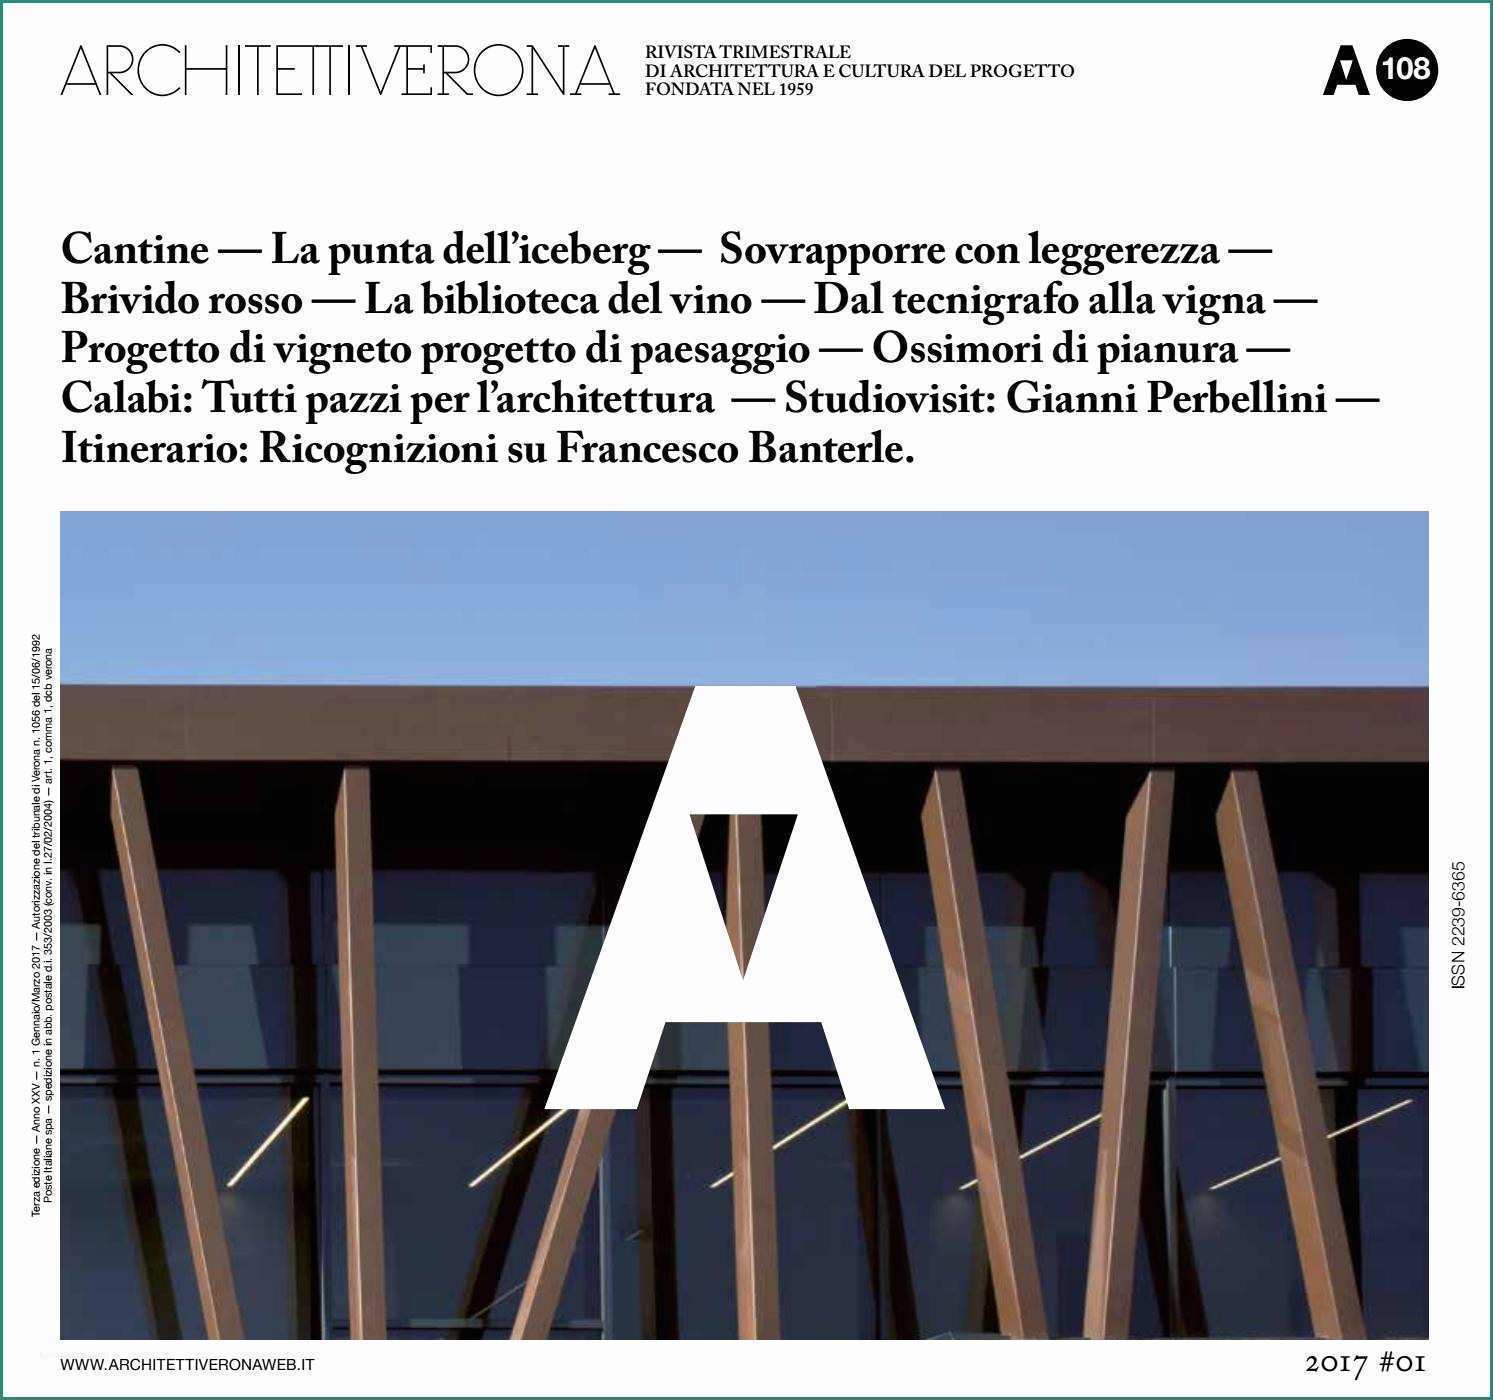 Pellicola isolante Per Vetri E Architettiverona 108 by Architettiverona issuu